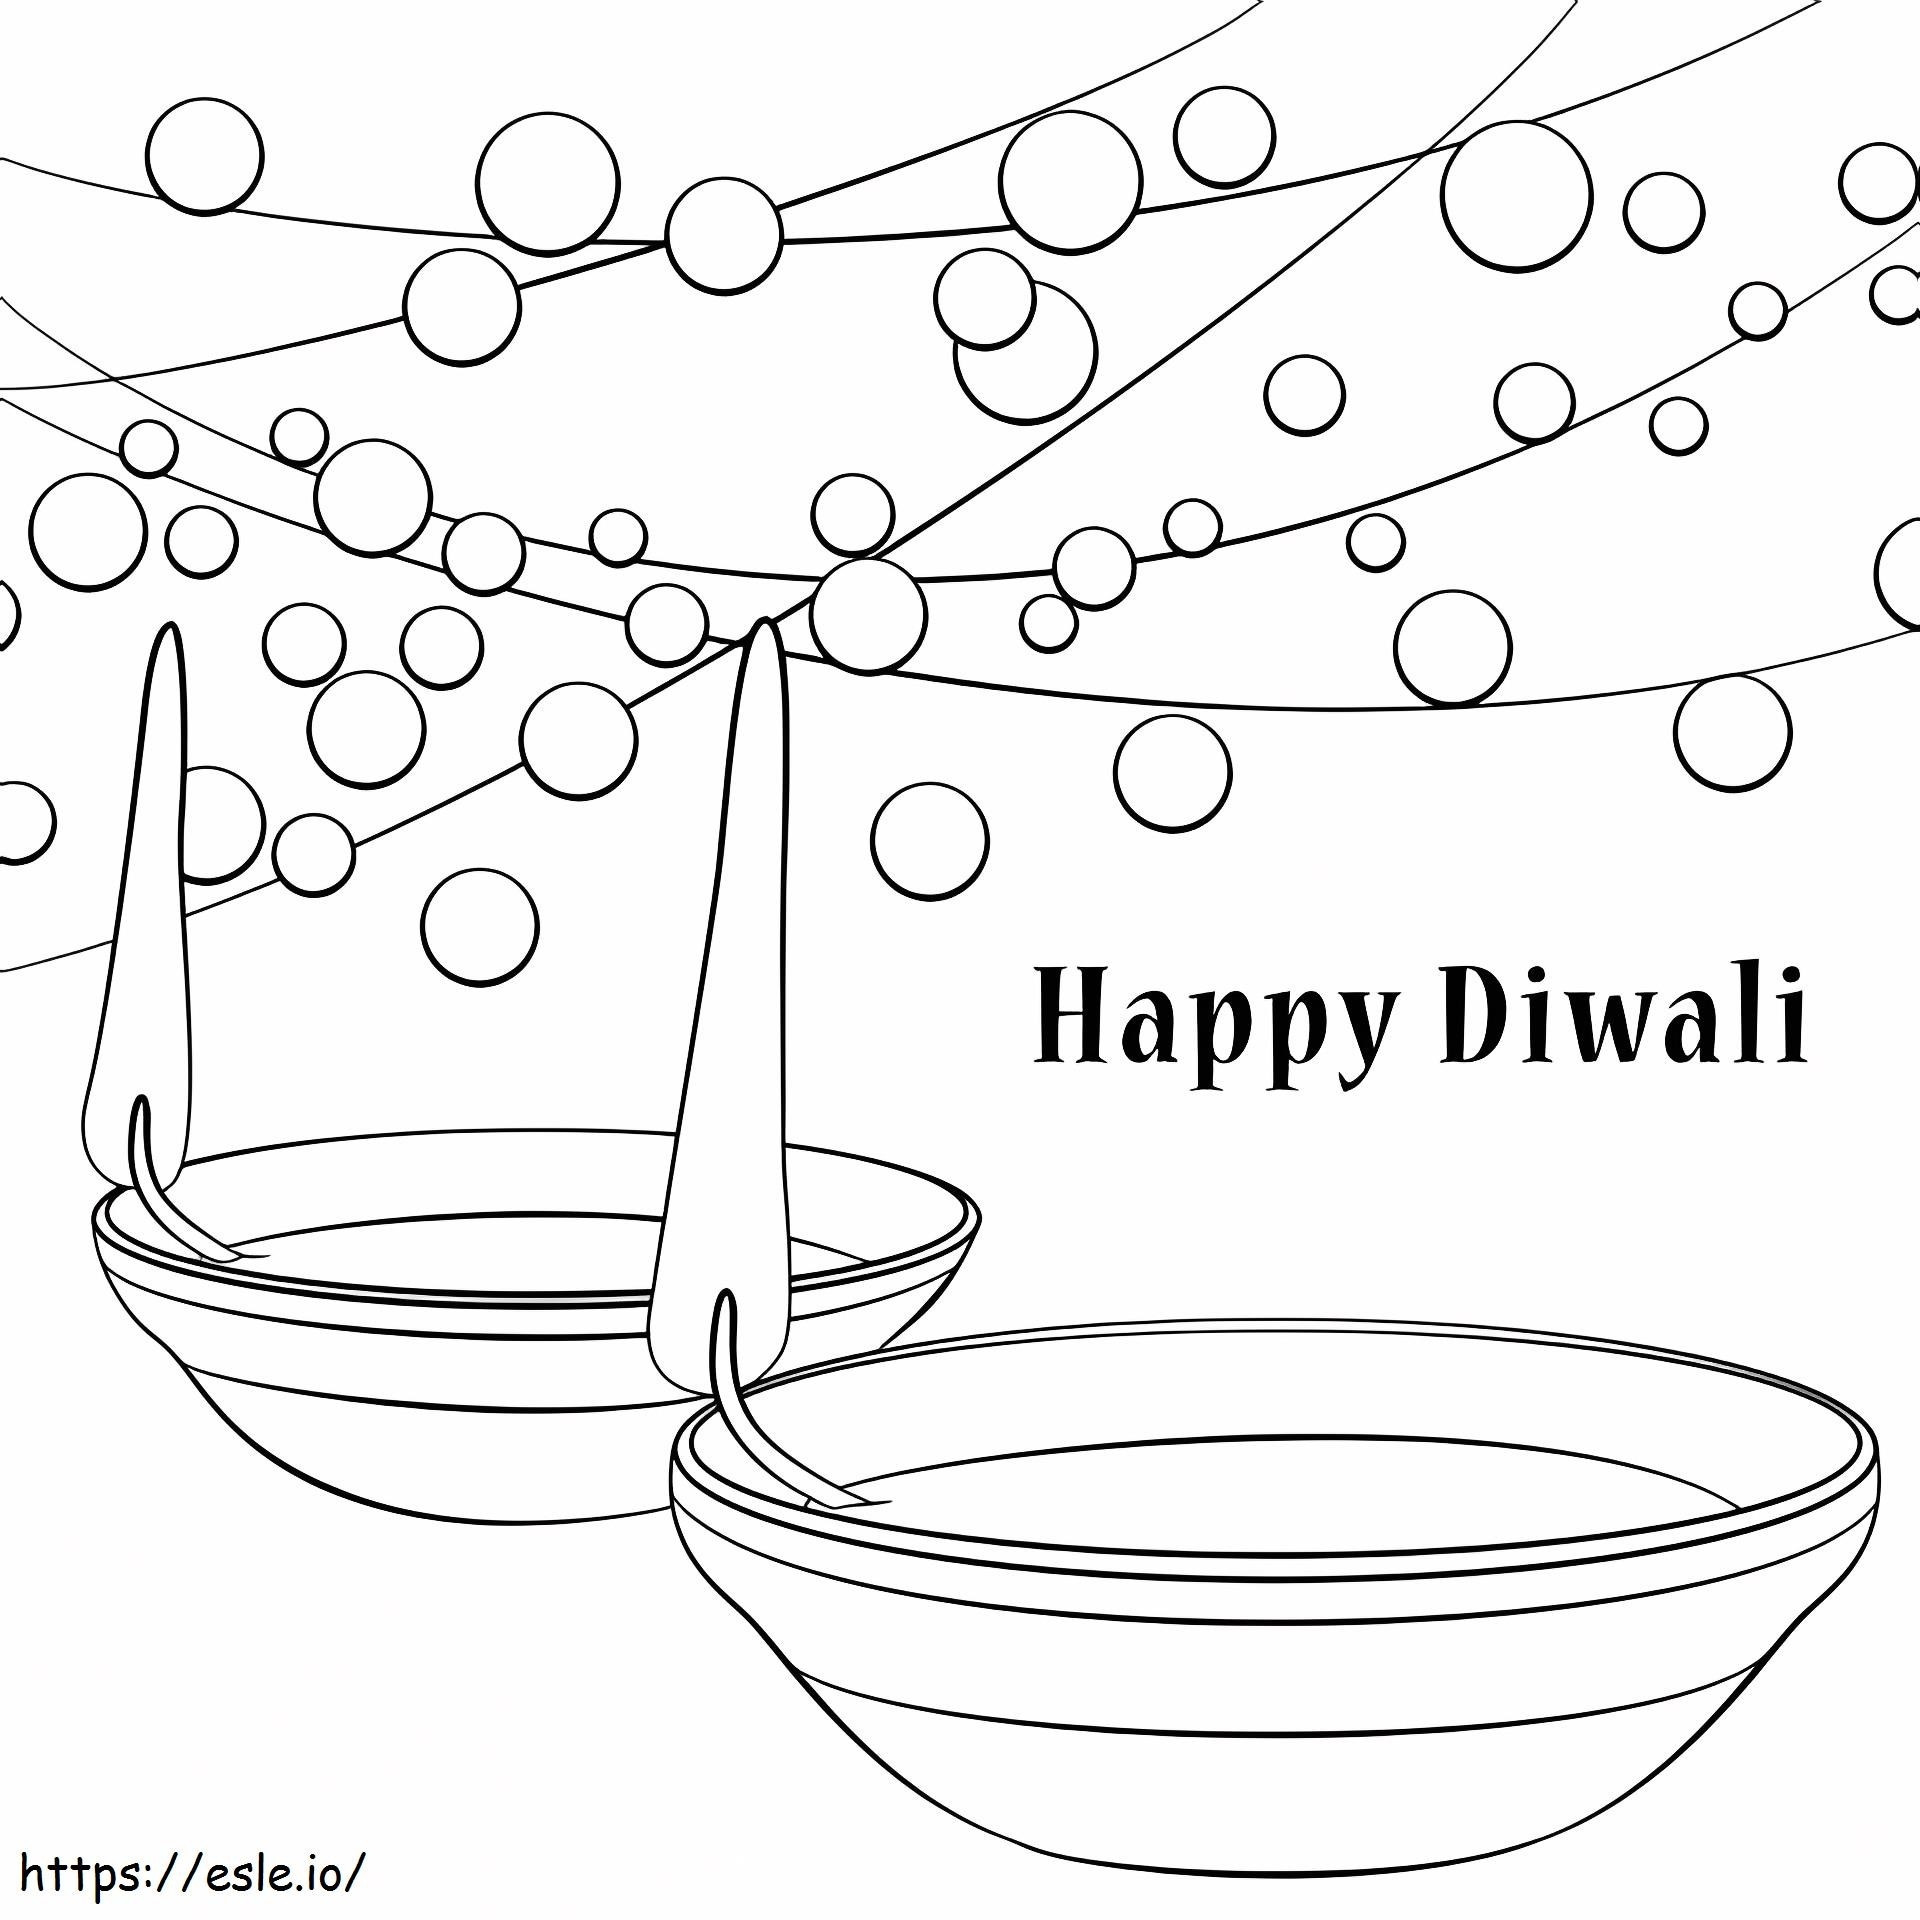 Happy Diwali coloring page